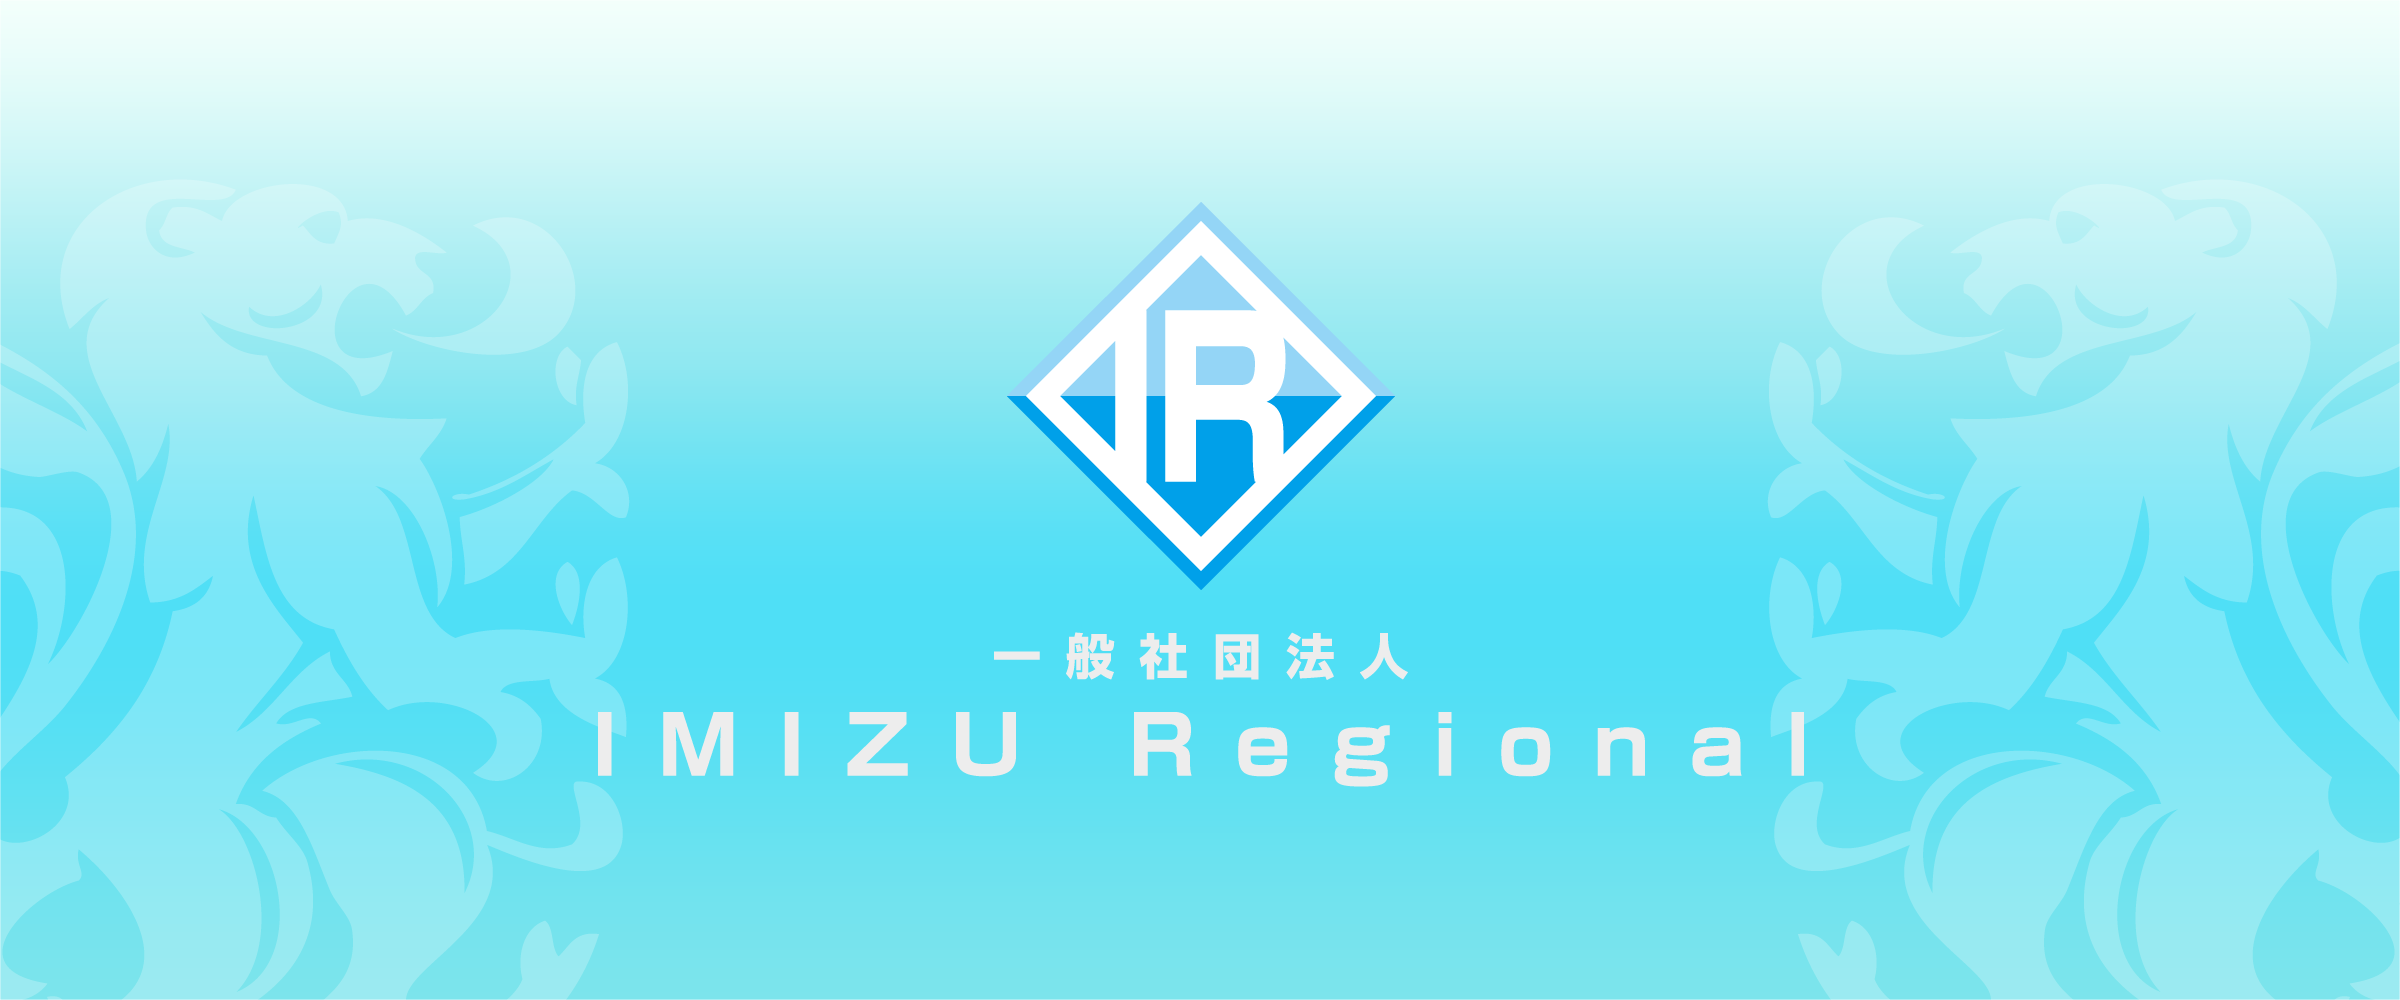 一般社団法人 IMIZU Regional